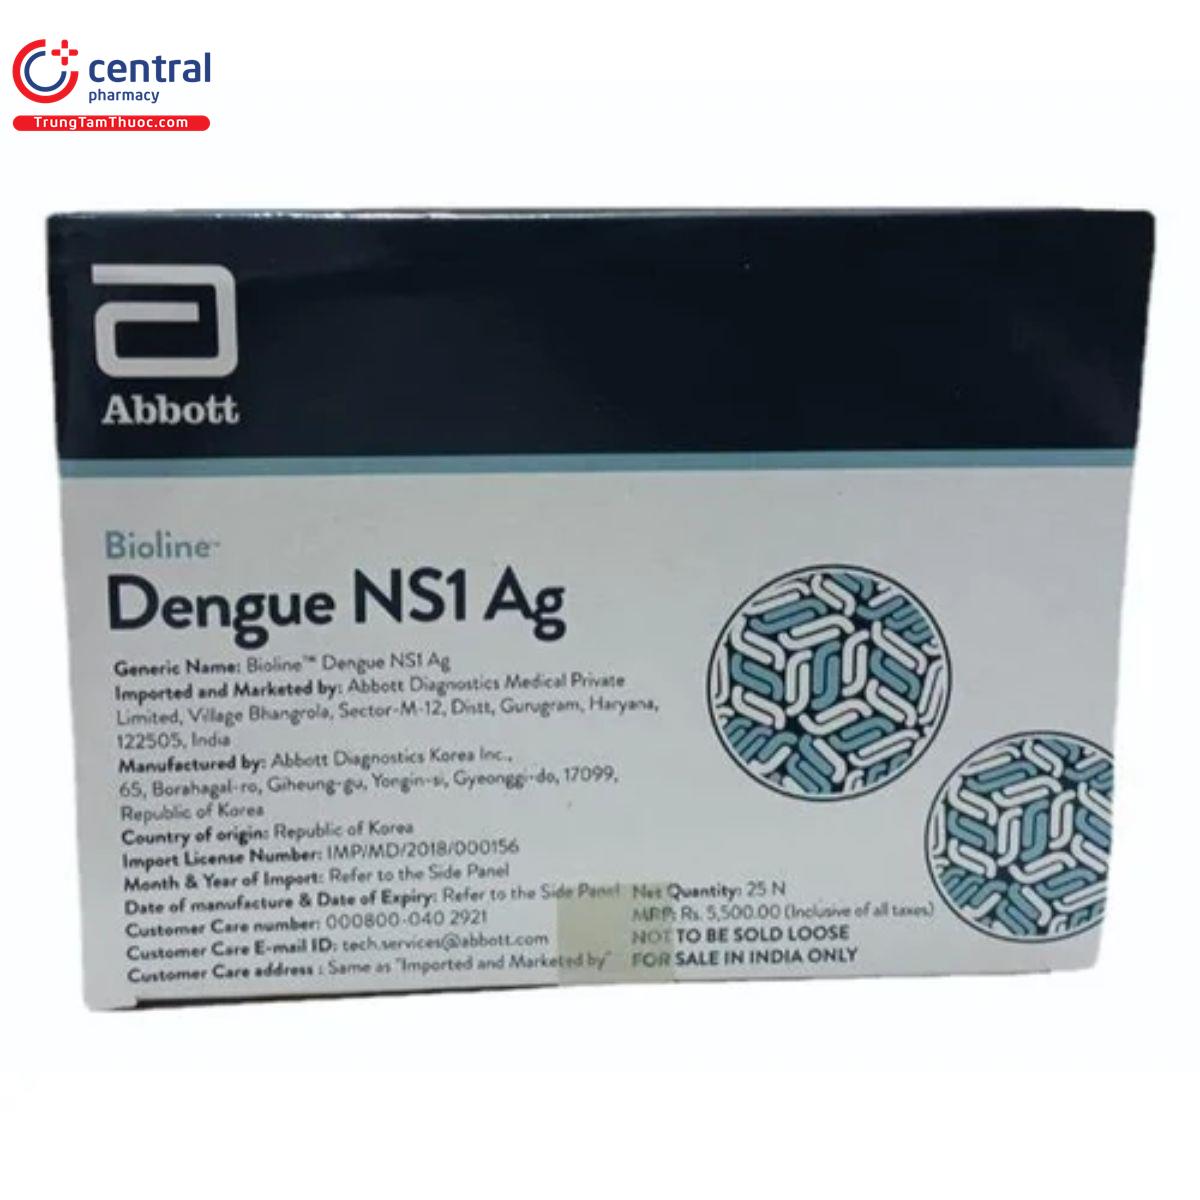 bioline dengue ns1 ag 2 M5347